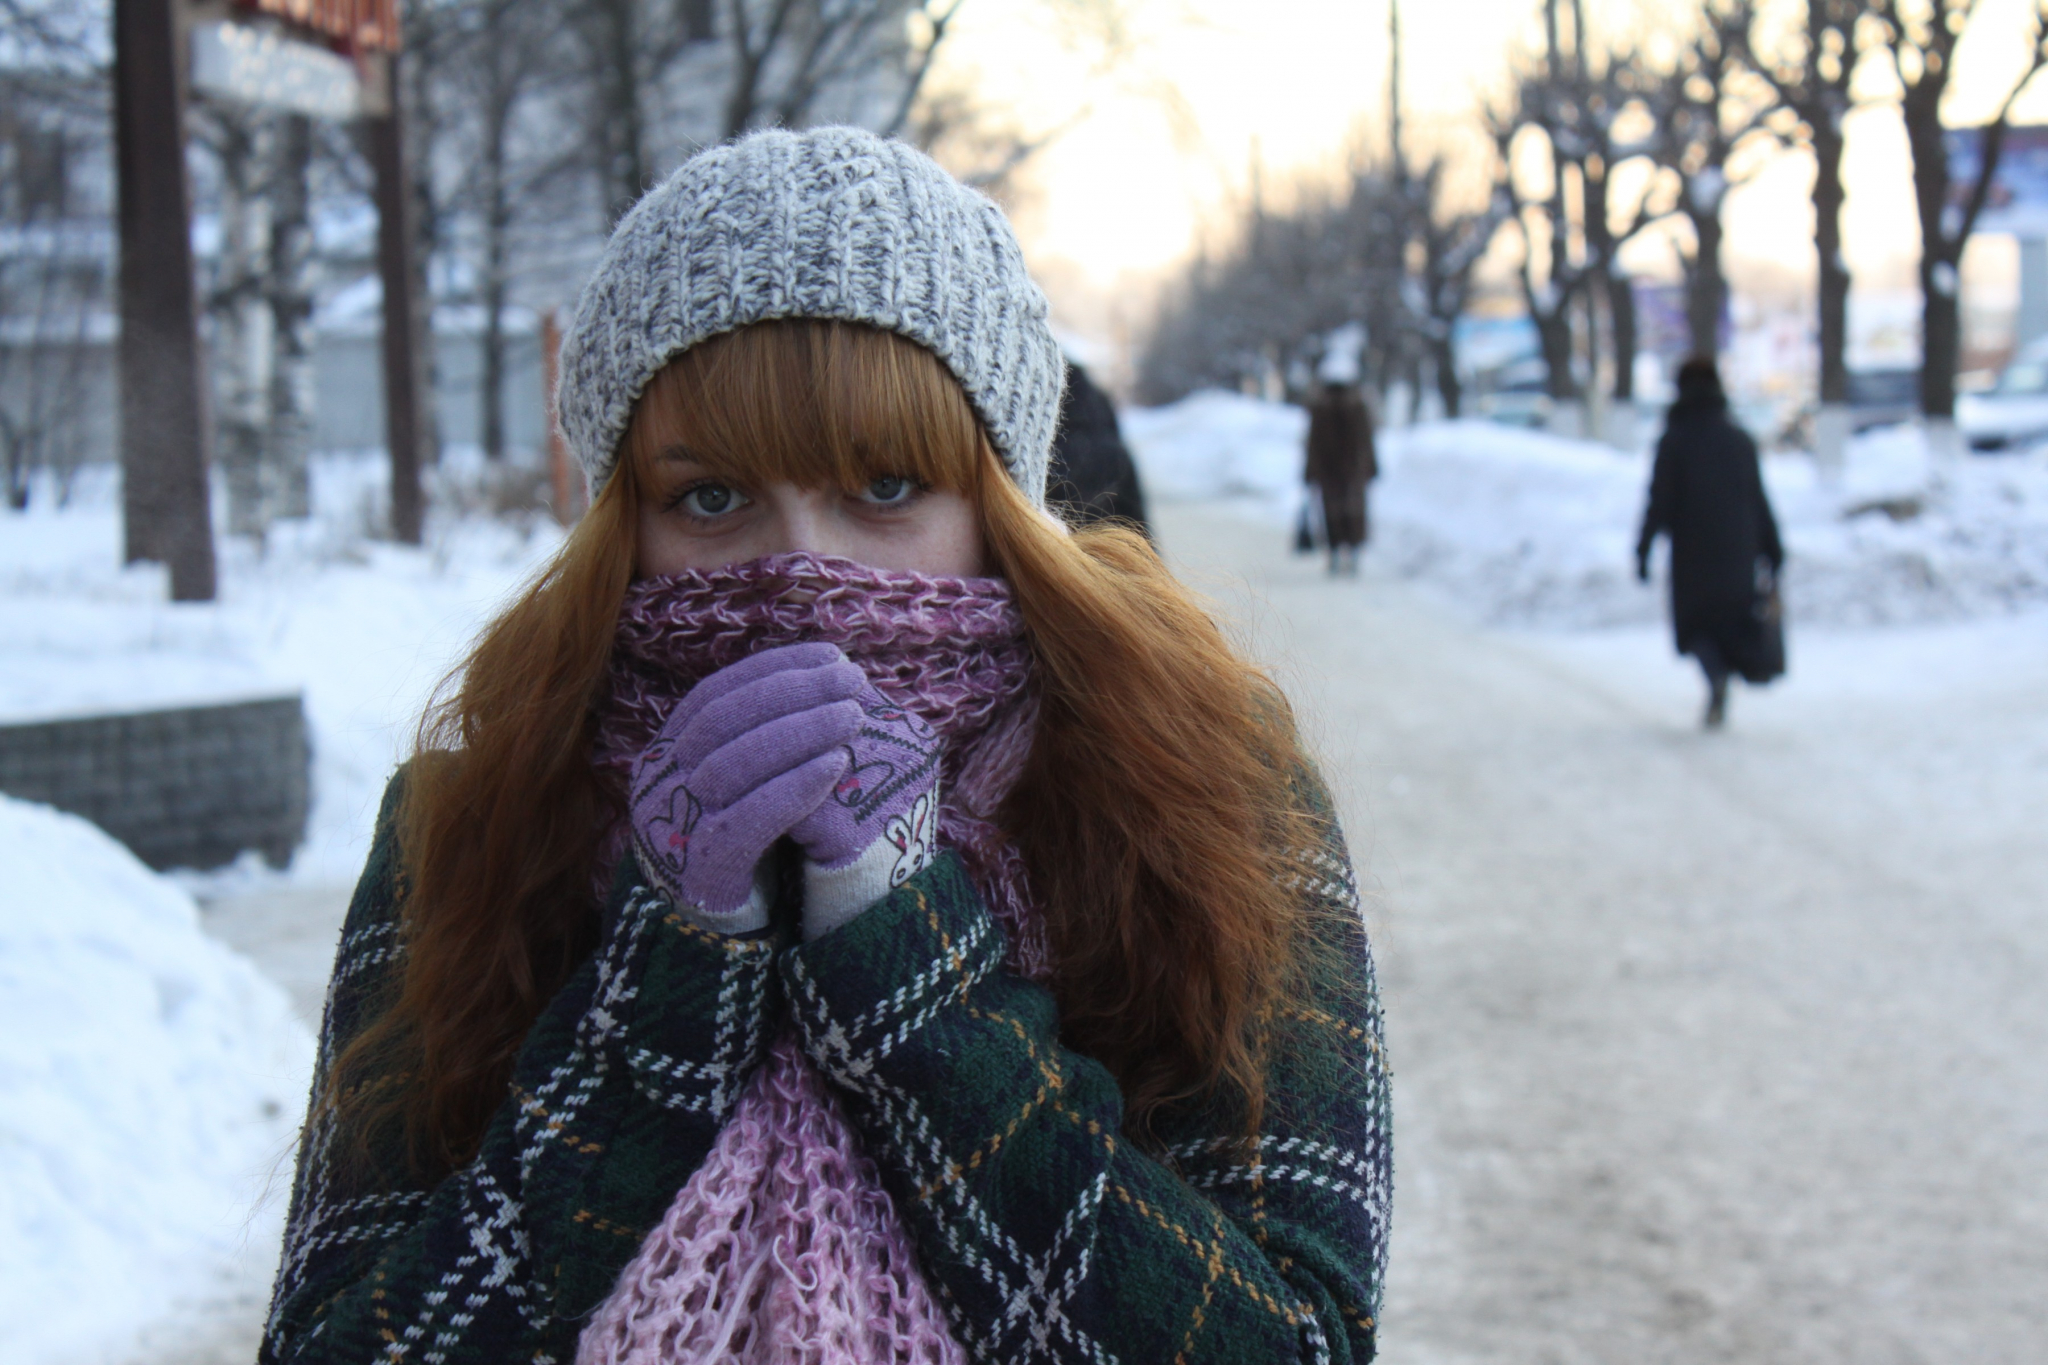 Оттепели не будет: народный синоптик рассказала о погоде в Кирове на декабрь